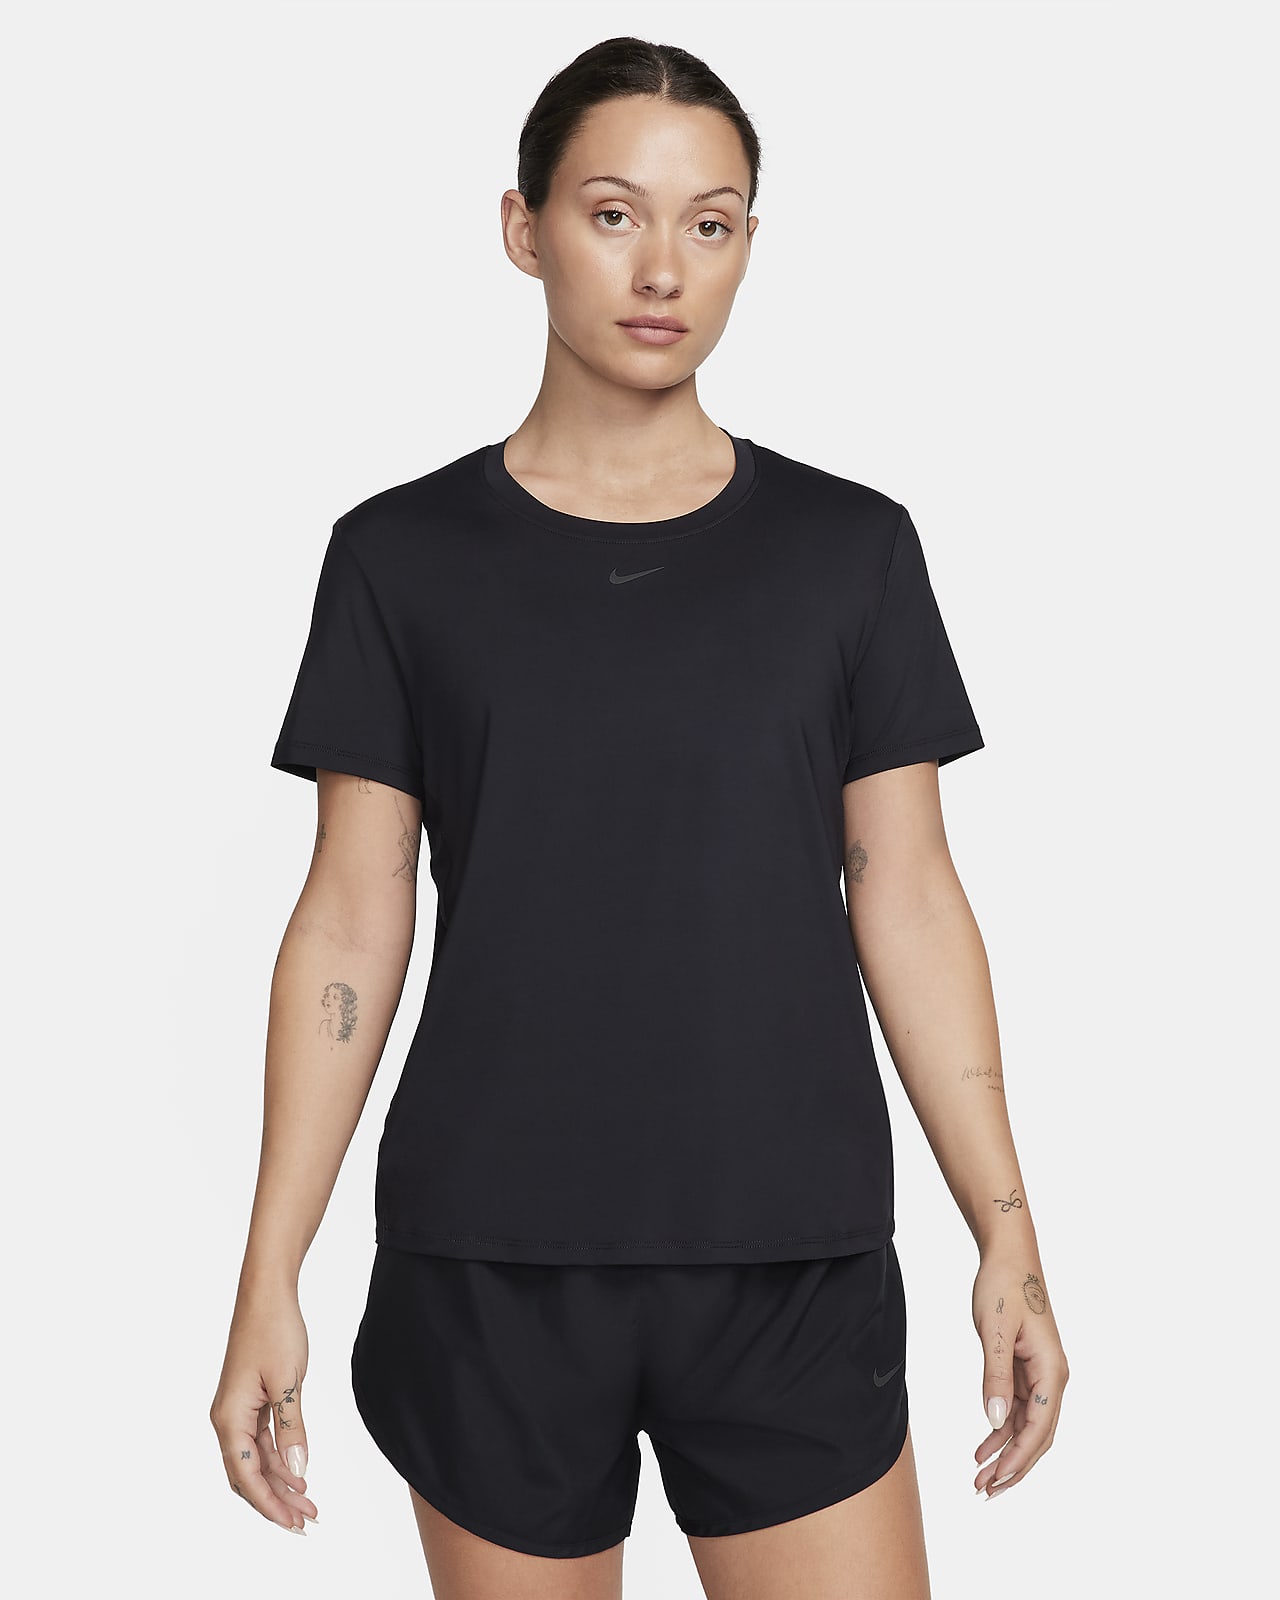 Camisola de manga curta Dri-FIT Nike One Classic para mulher